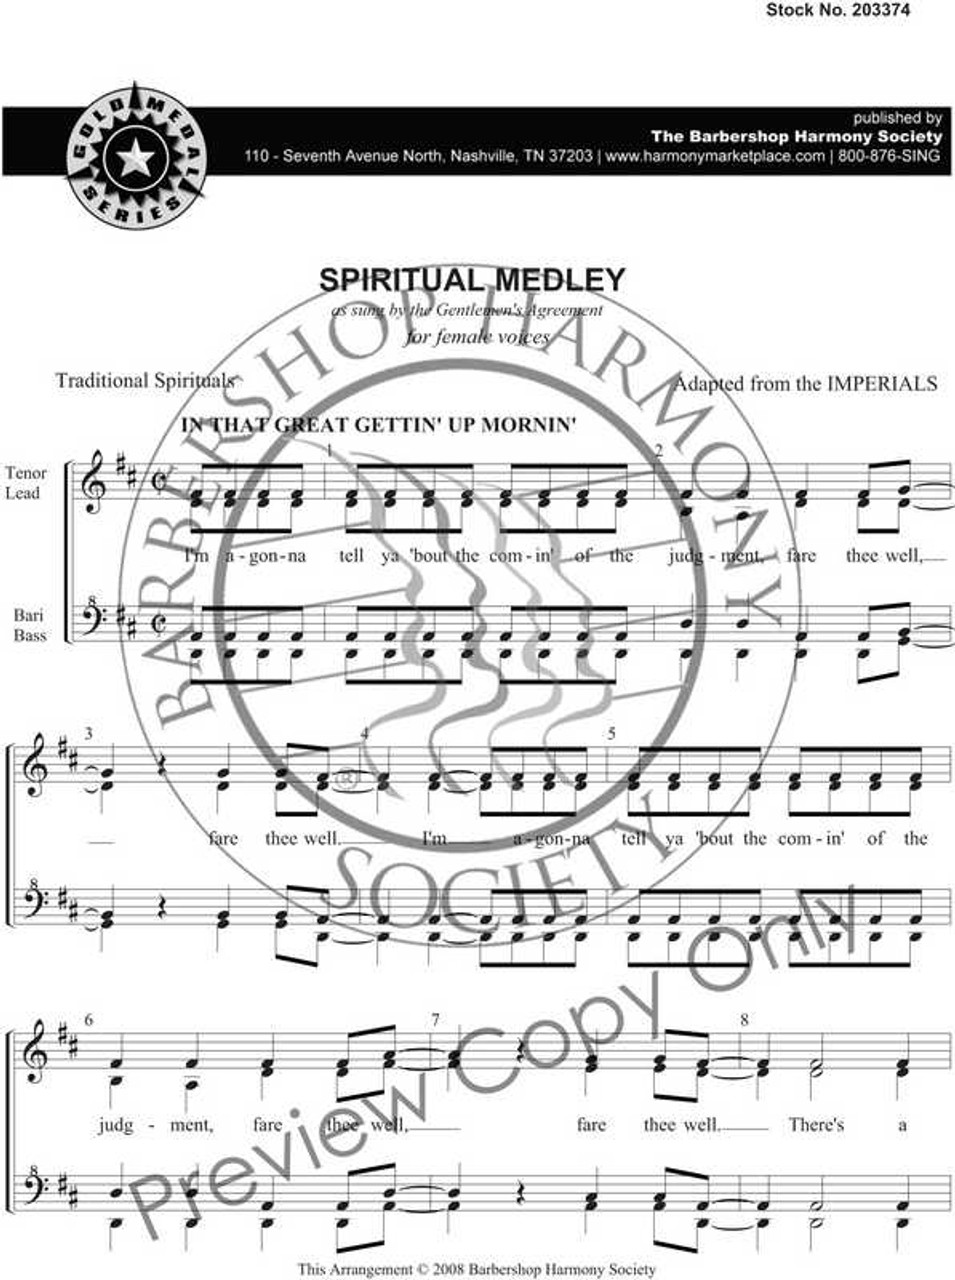 Spiritual Medley (SSAA) - Download